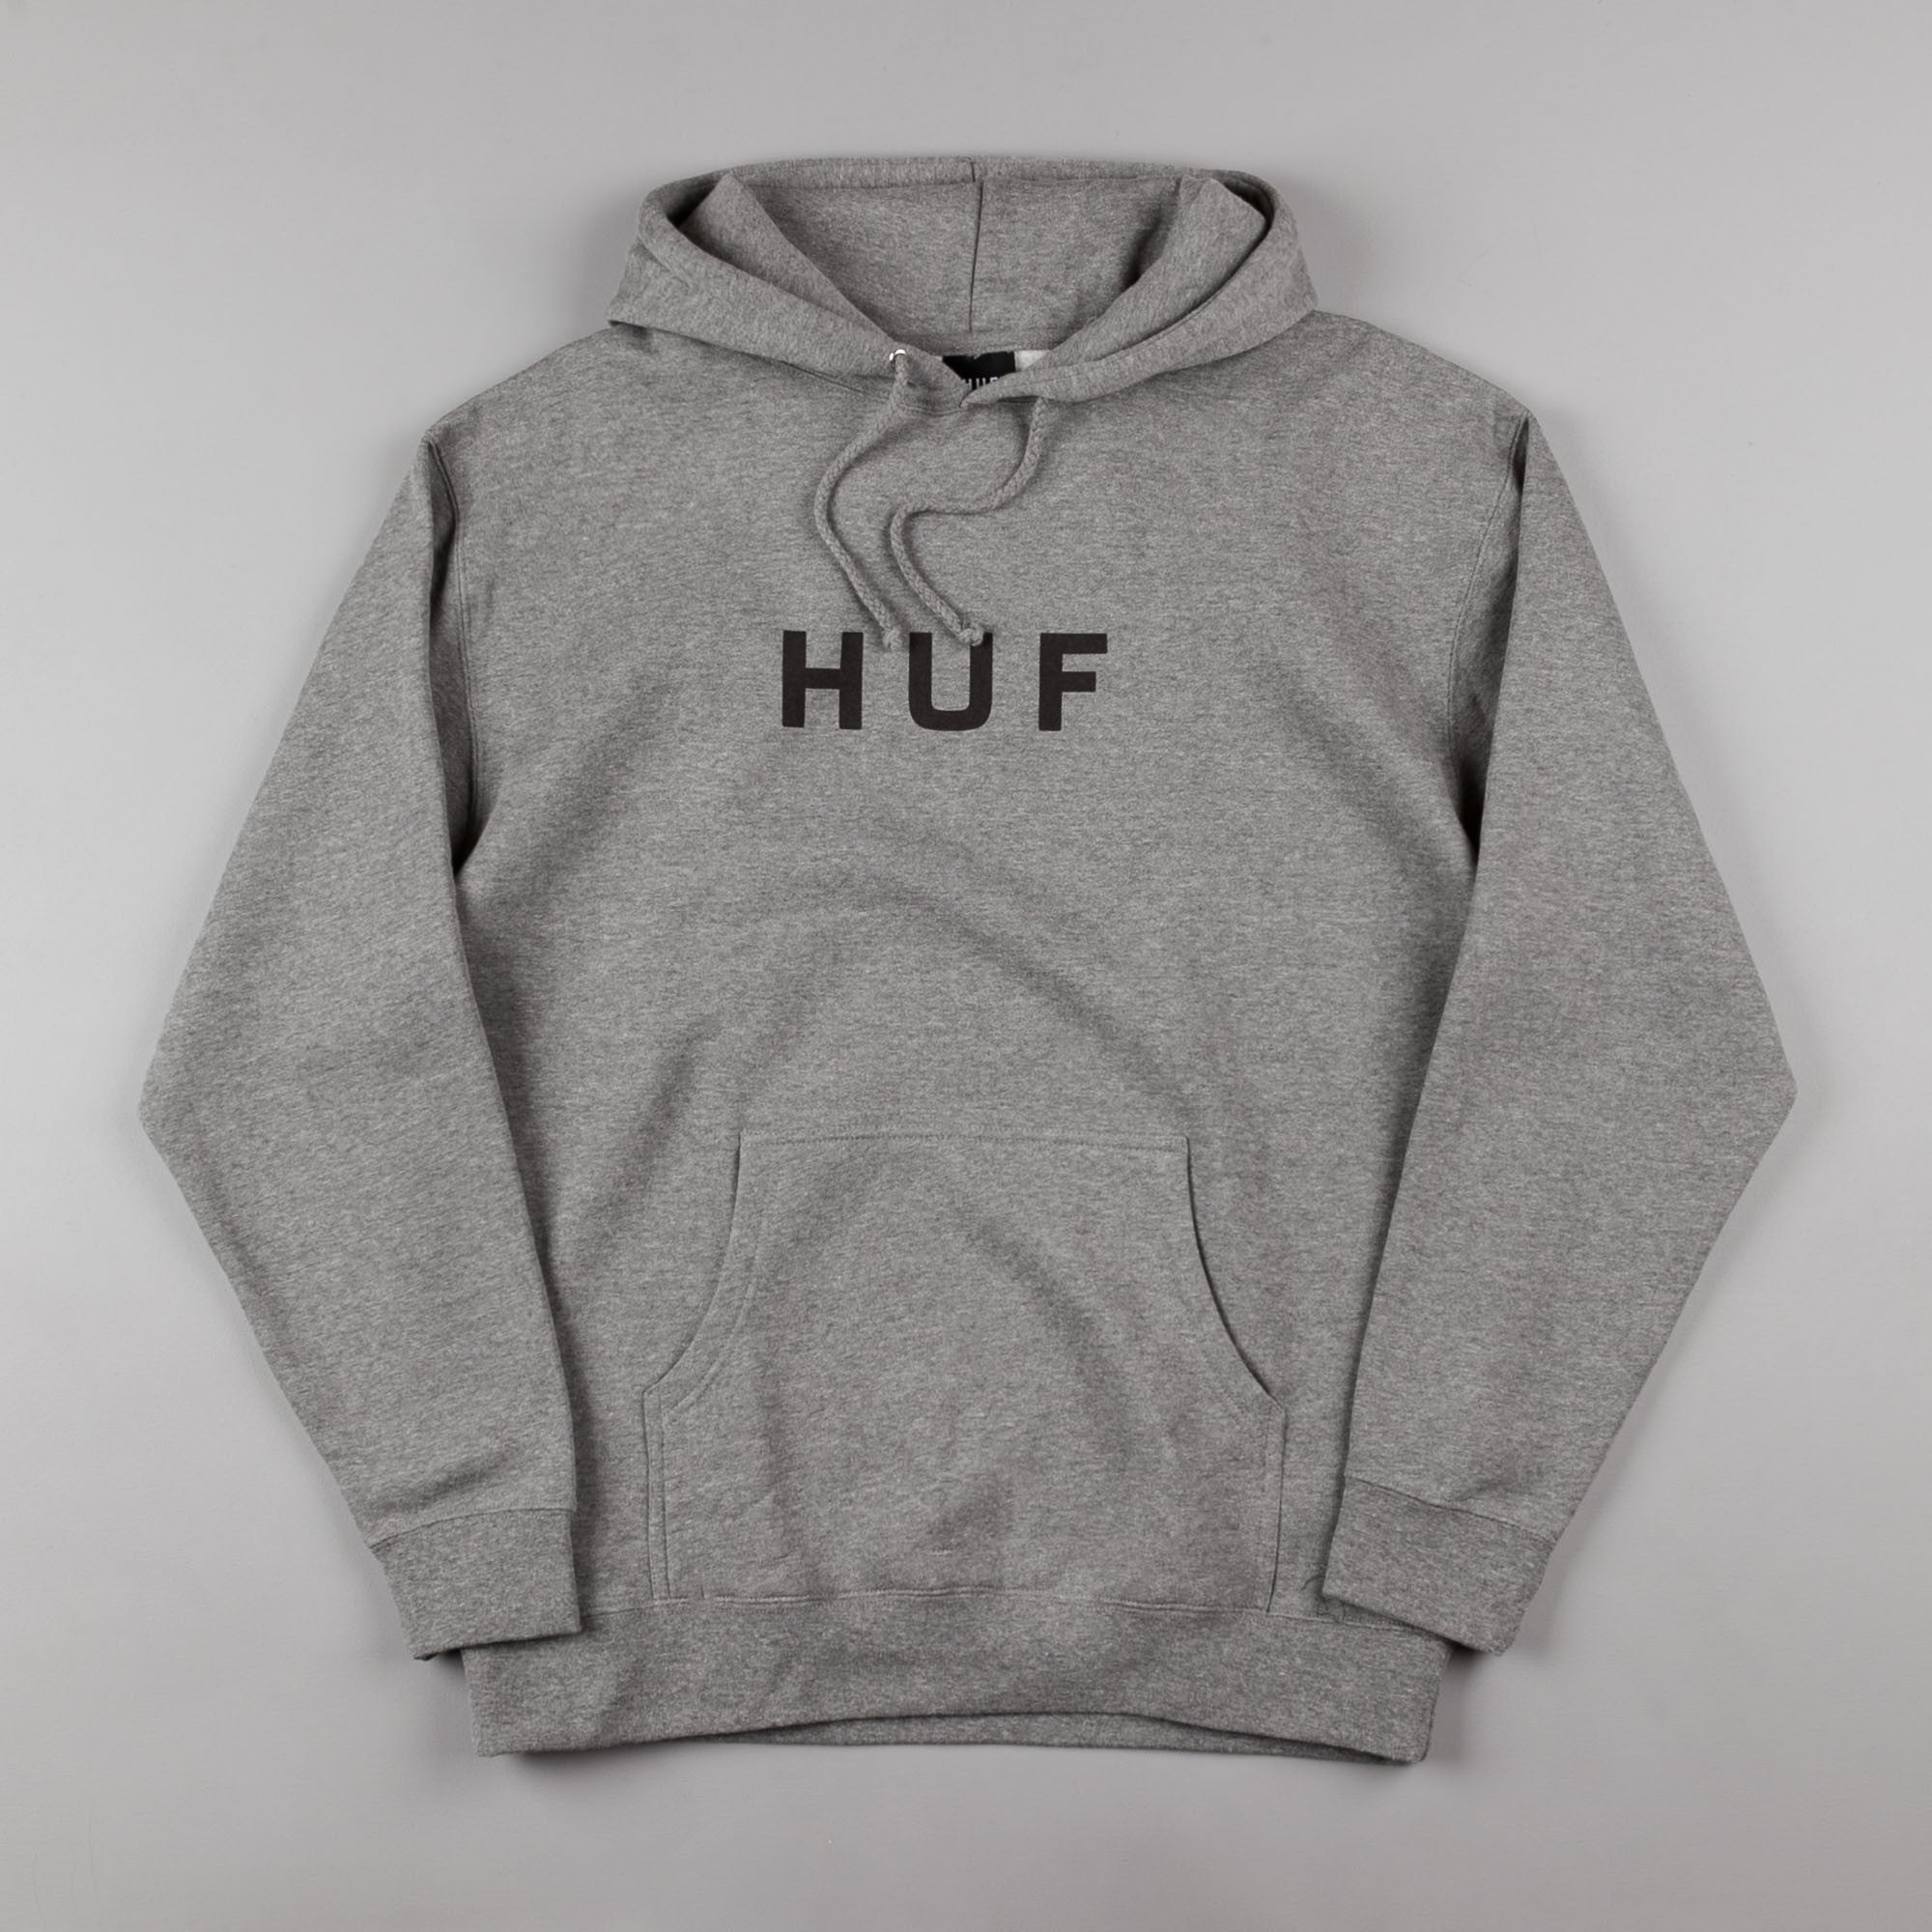 huf hoodie original